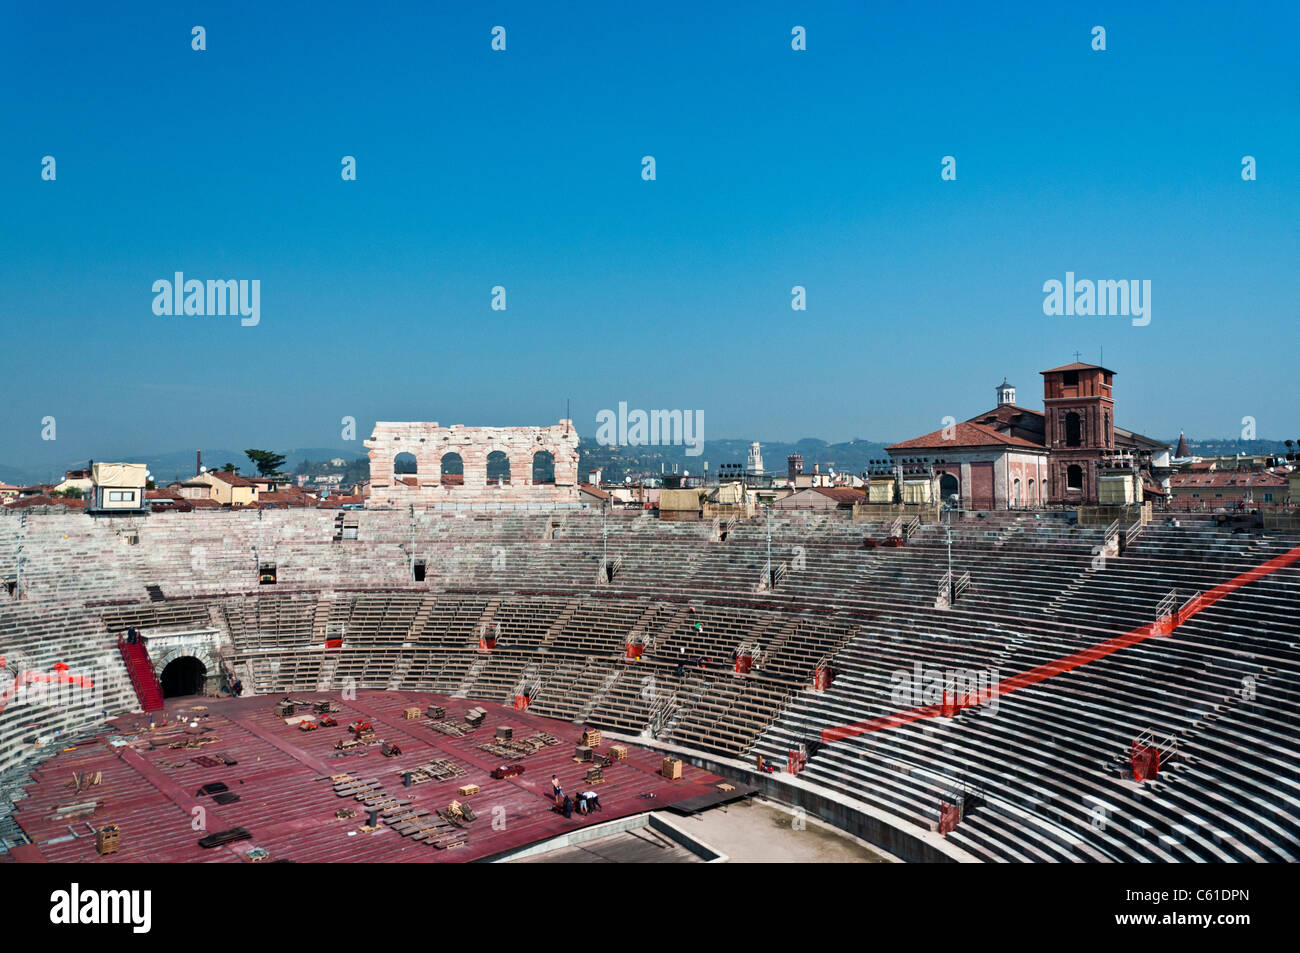 Roman Amphitheater, Verona Italy Stock Photo